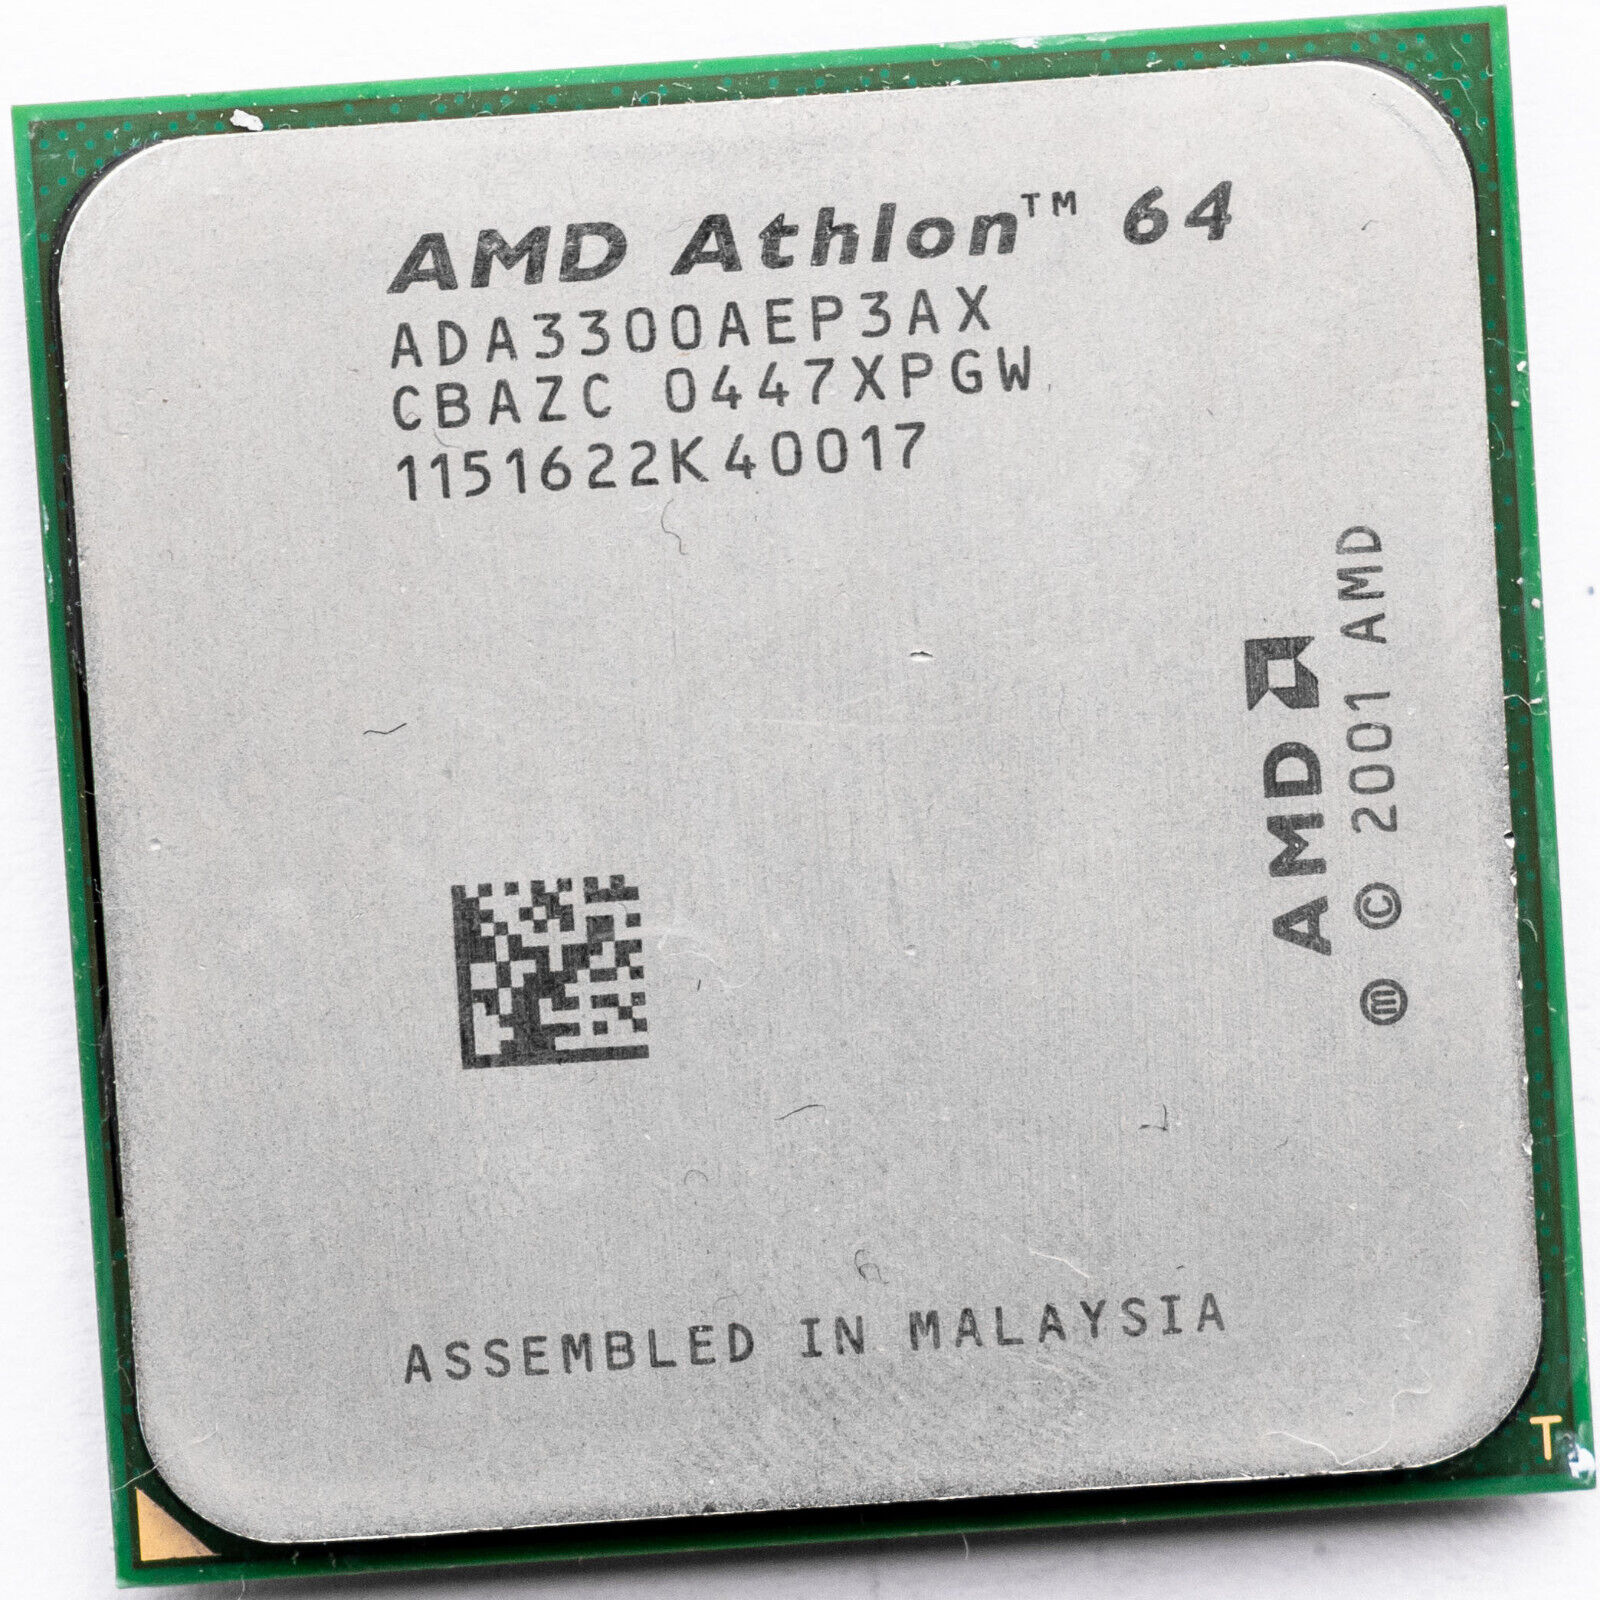 AMD Athlon 64 3300+ ADA3300AEP3AX 2.4GHz Socket 754 Processor 256KB like 3700+